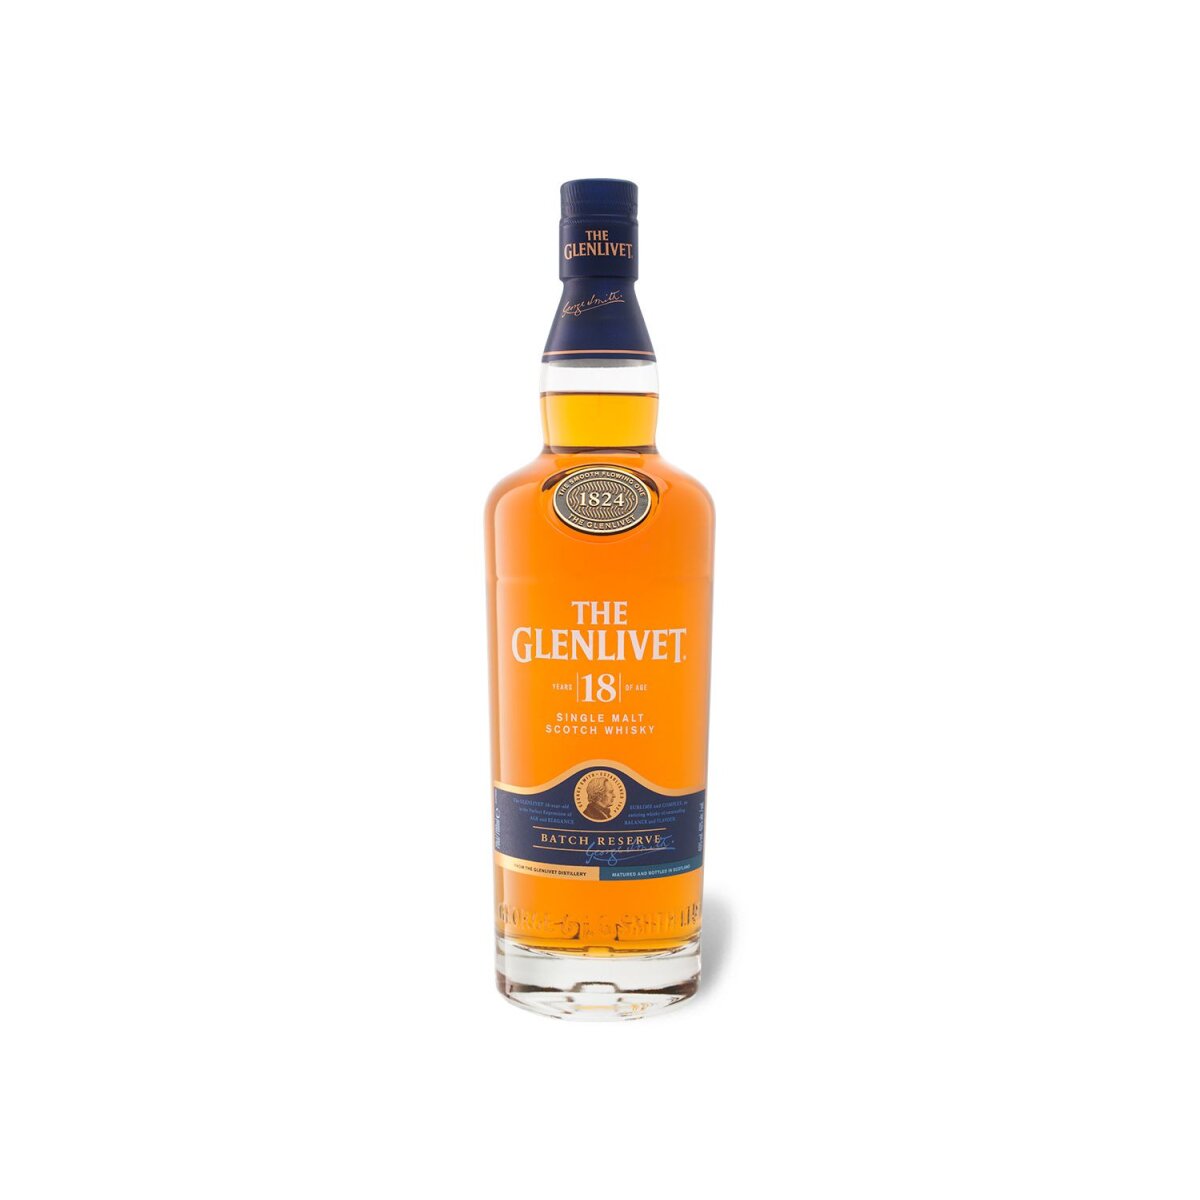 55,99 Geschenkbox Jahre € Malt mit 18 Whisky 40% The Vol, Single Scotch Glenlivet Speyside